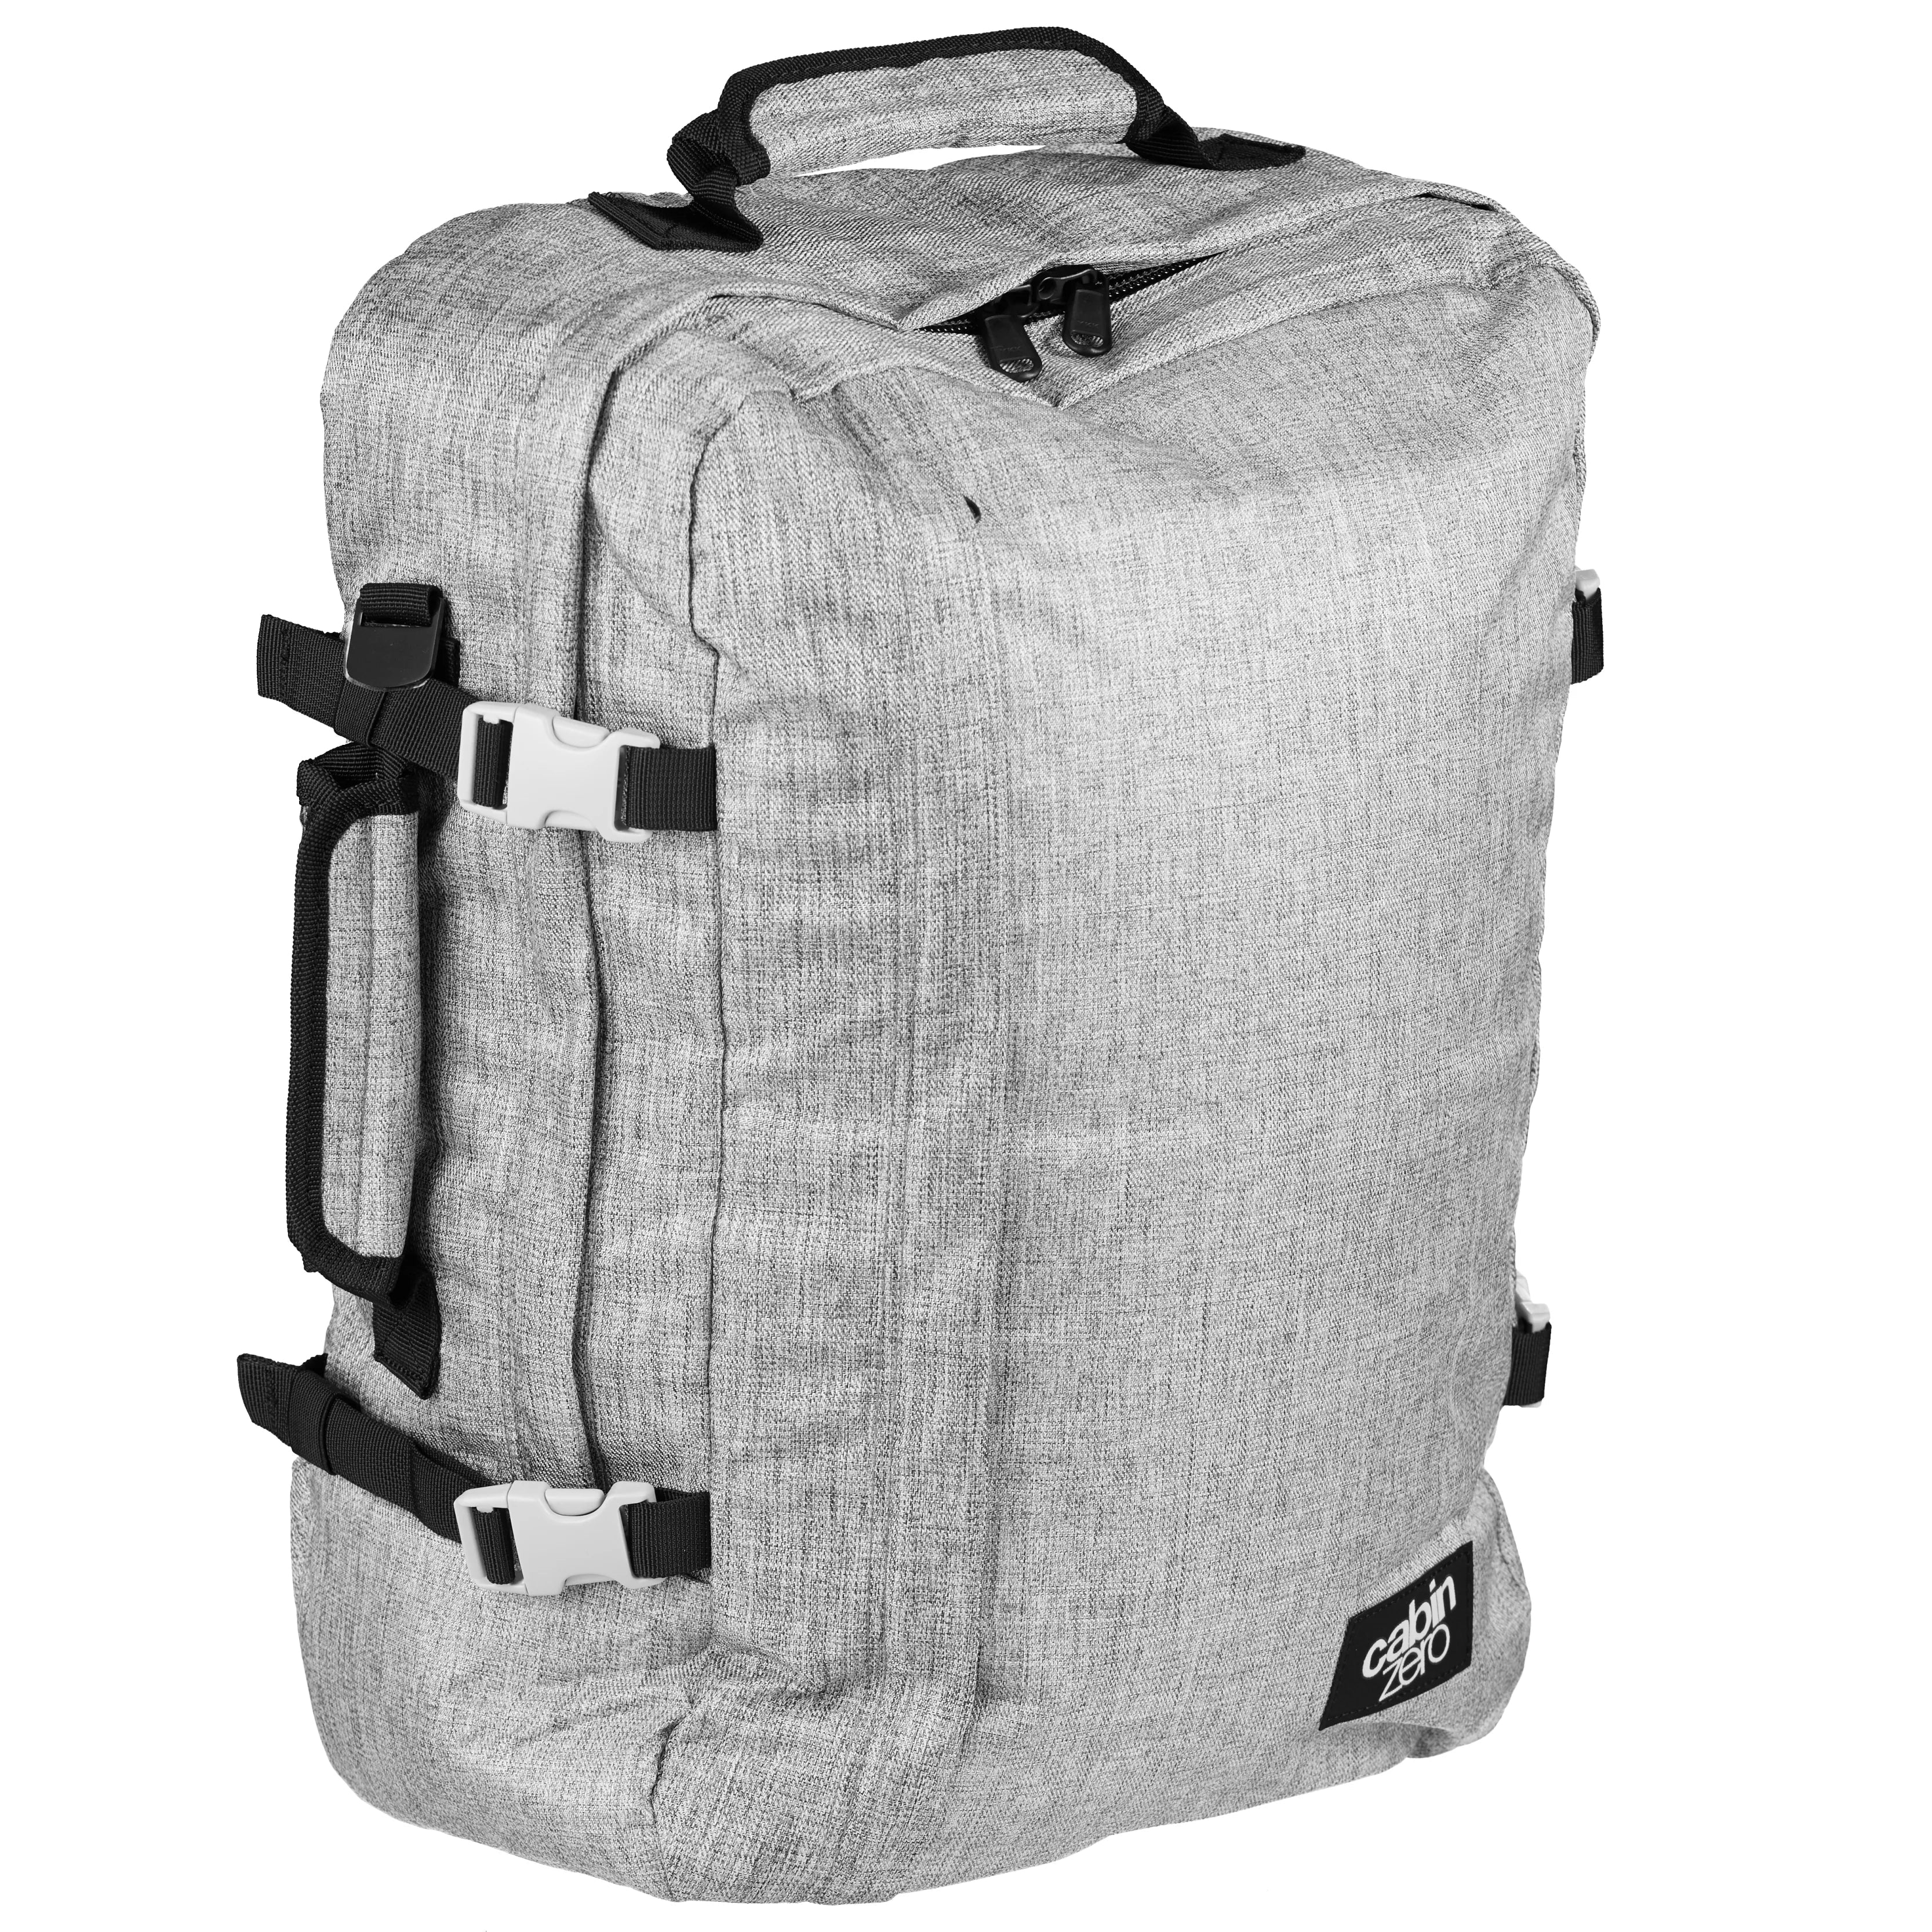 CabinZero Cabin Backpacks Sac à dos Classic 44L 51 cm - sable noir